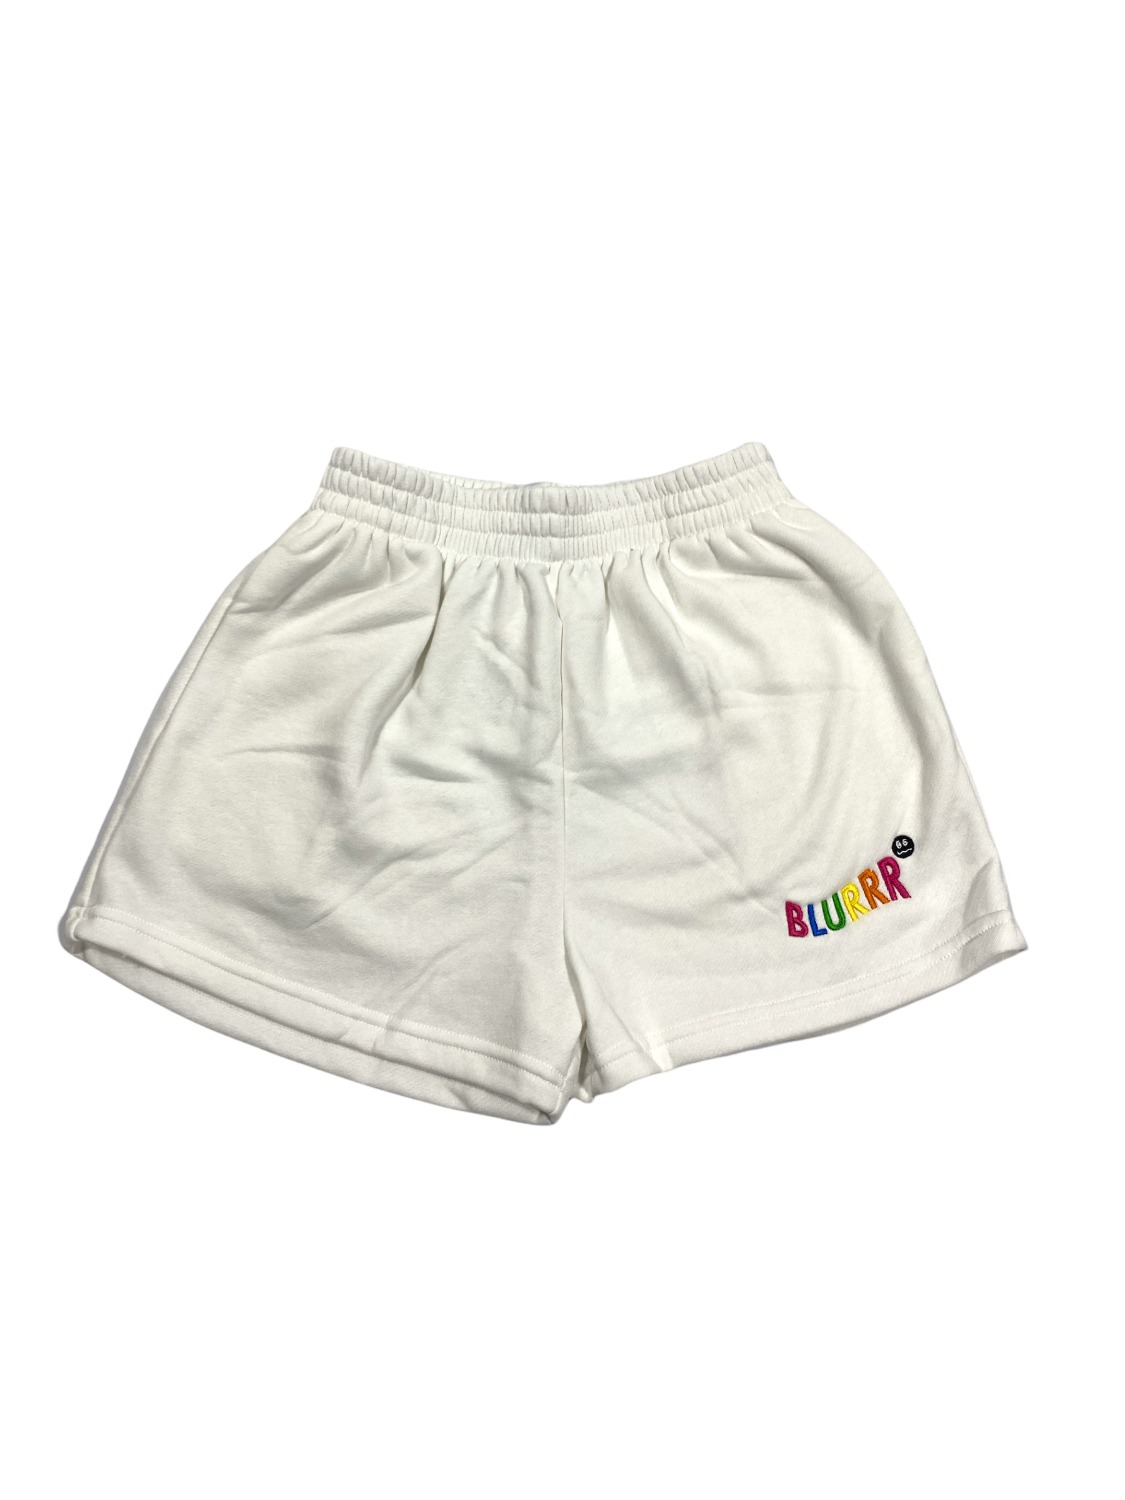 BLURRR Fluffy Shorts (White)